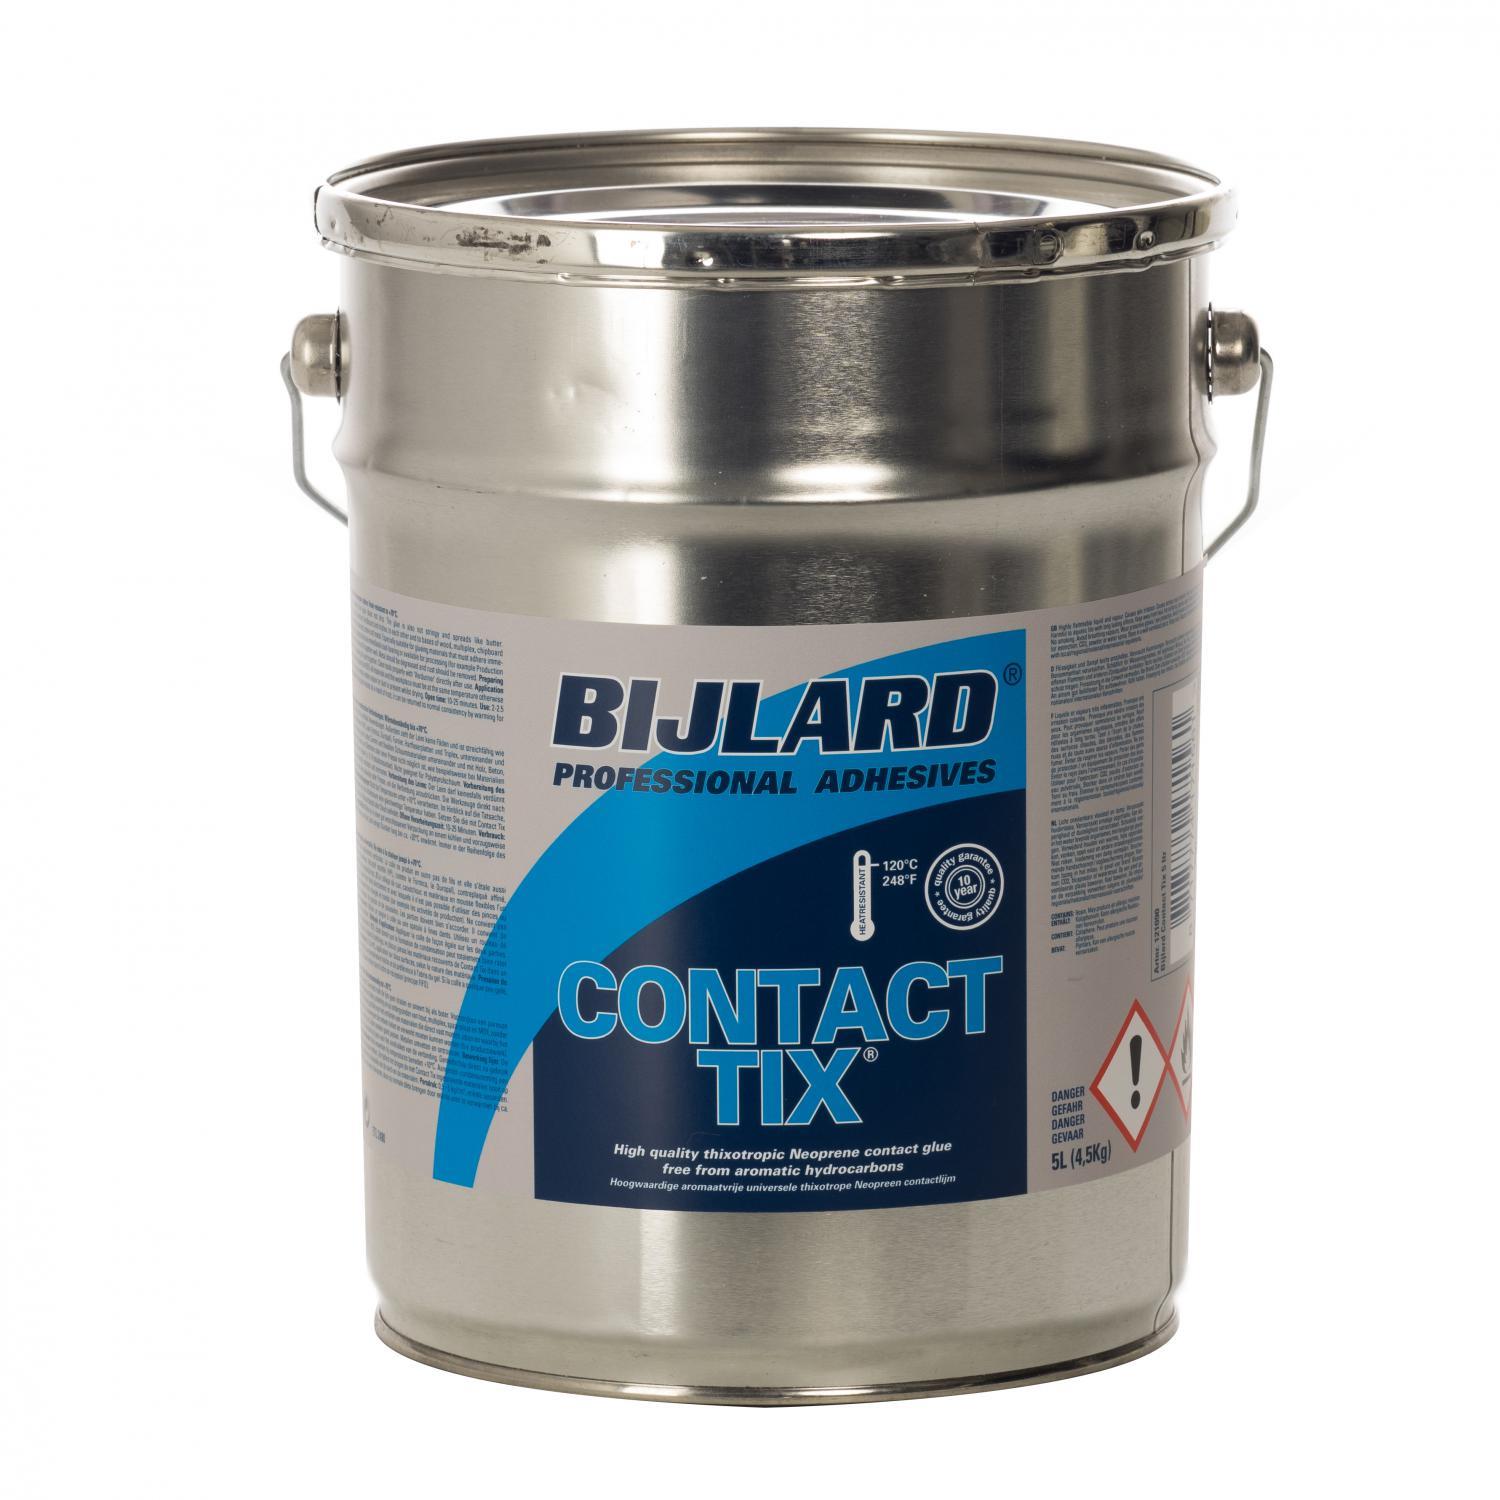 Bijlard Contact Tix,  Dose 5 Liter, Farbe: gelb, streichfähiger Neopren Kontaktkleber